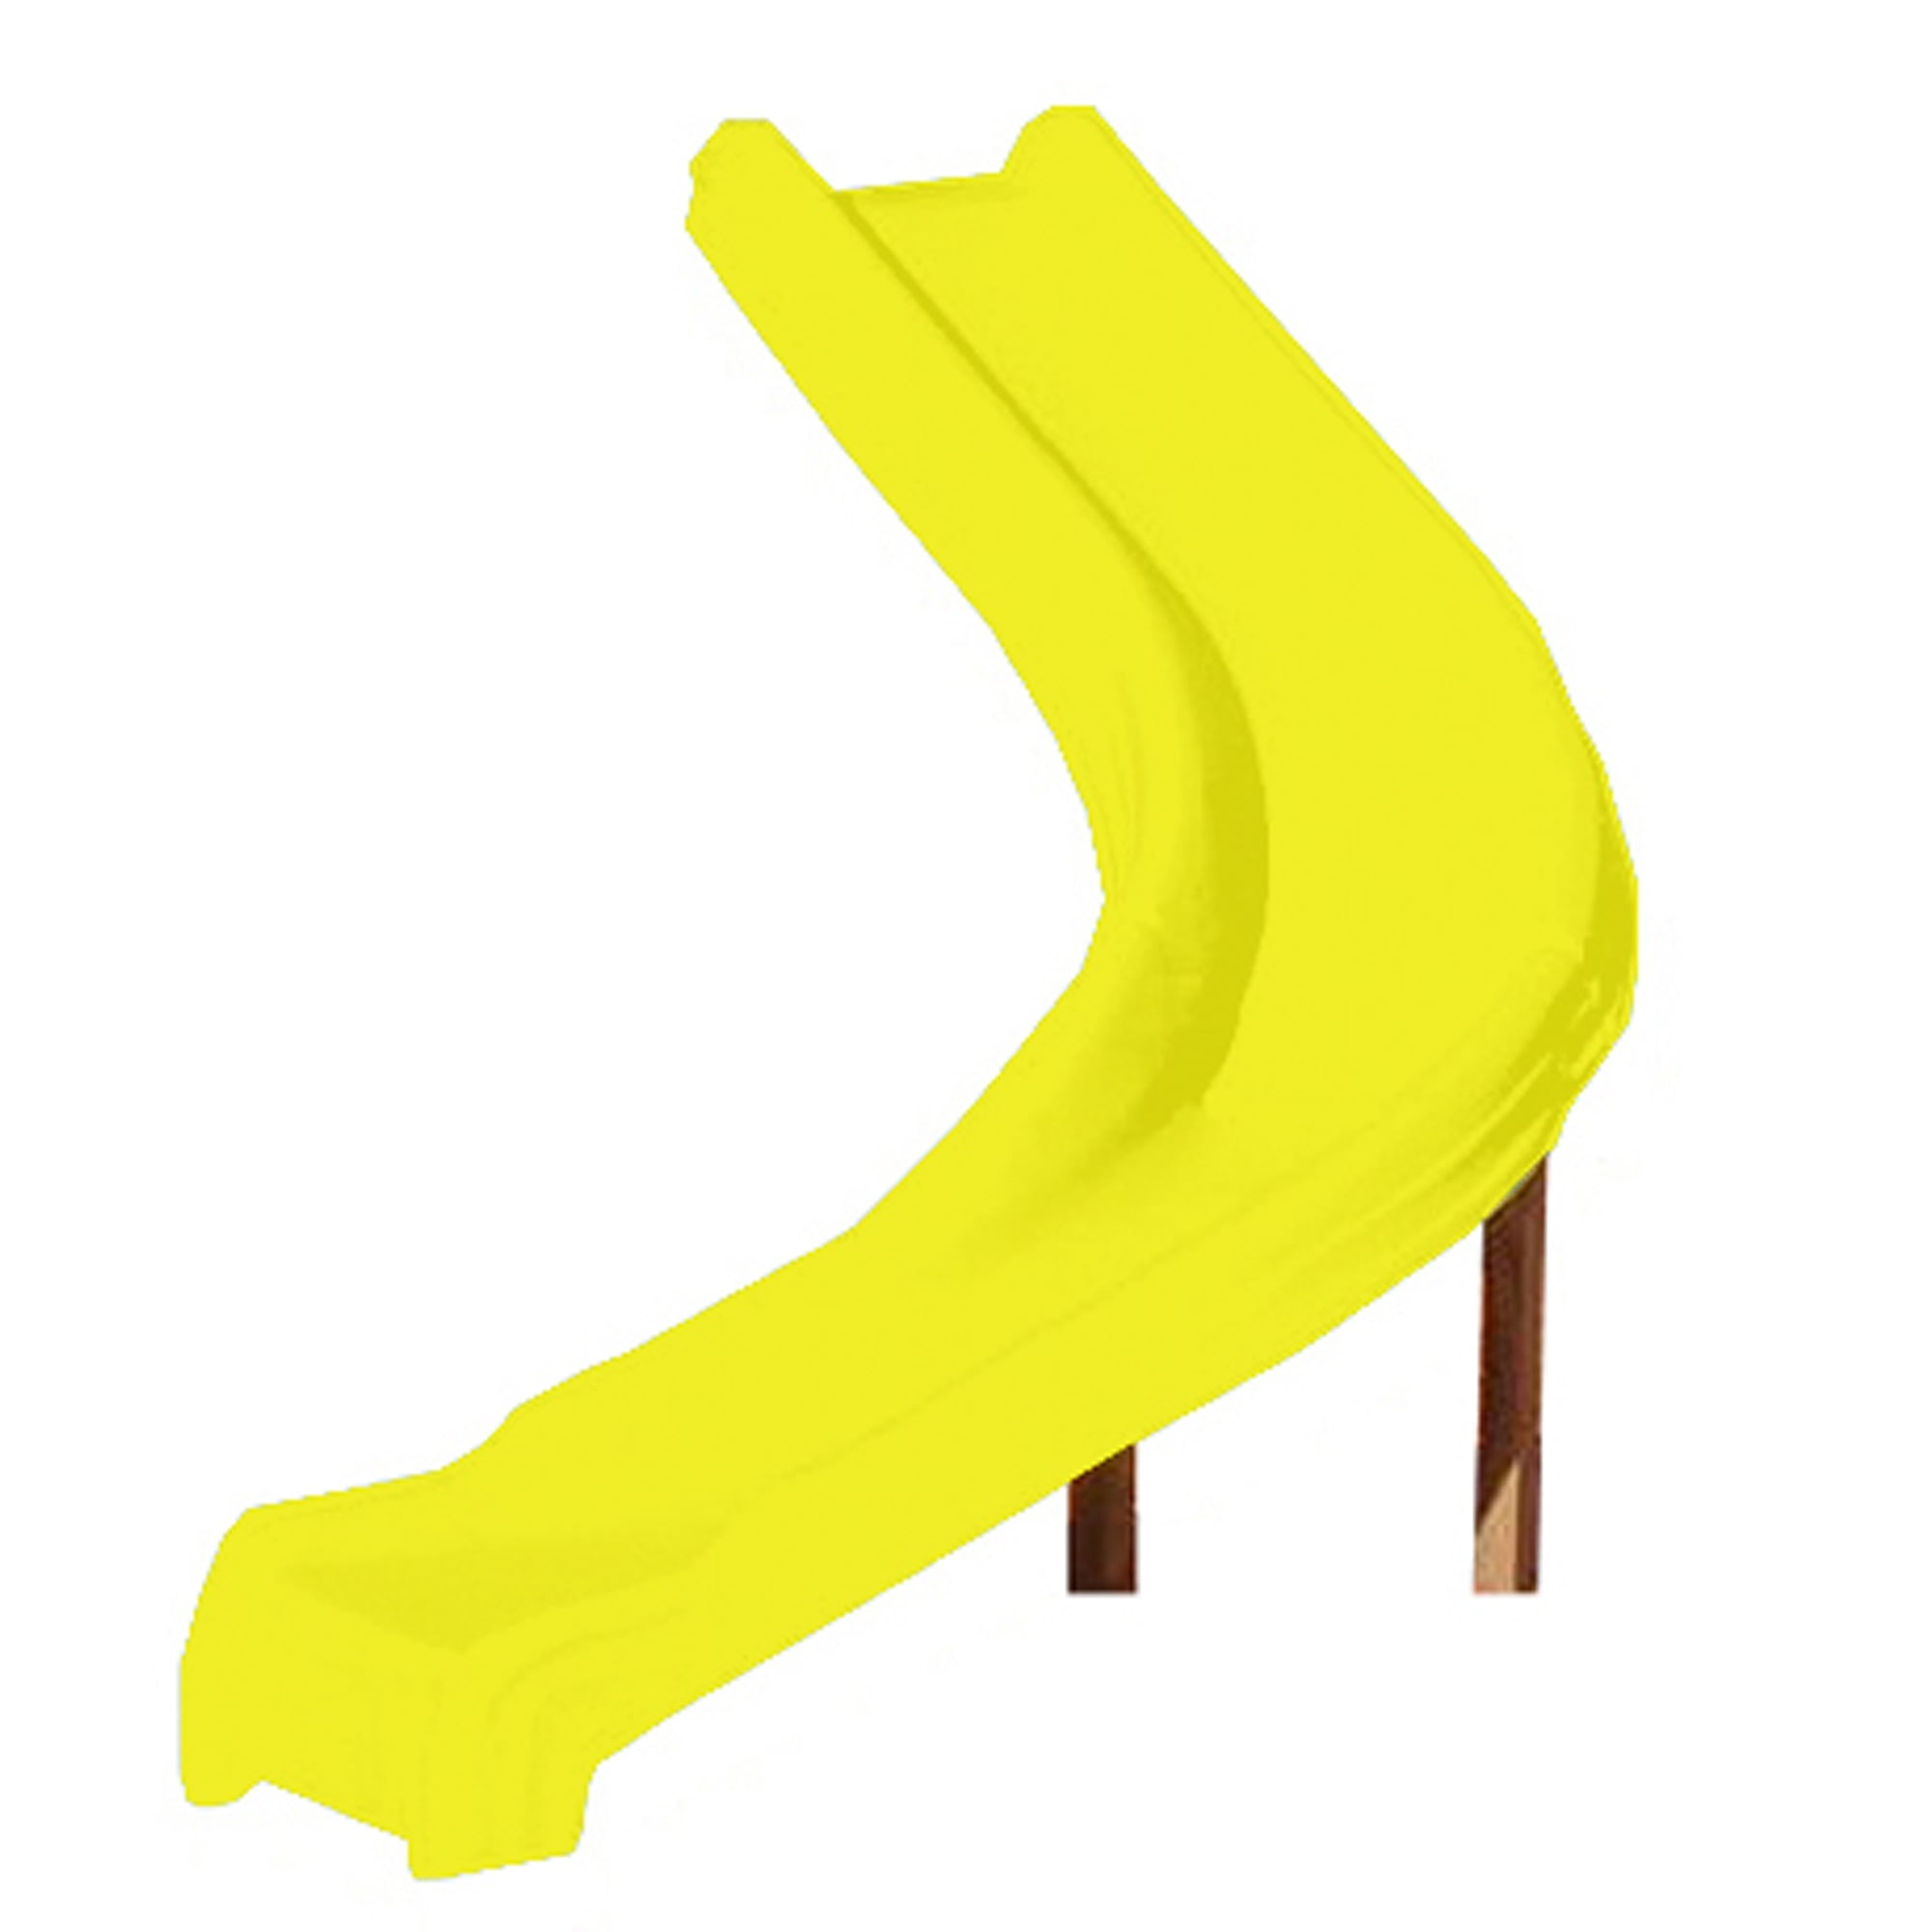 Swing N Slide 5 Foot Side Winder Slide With Lifetime Warranty Yellow